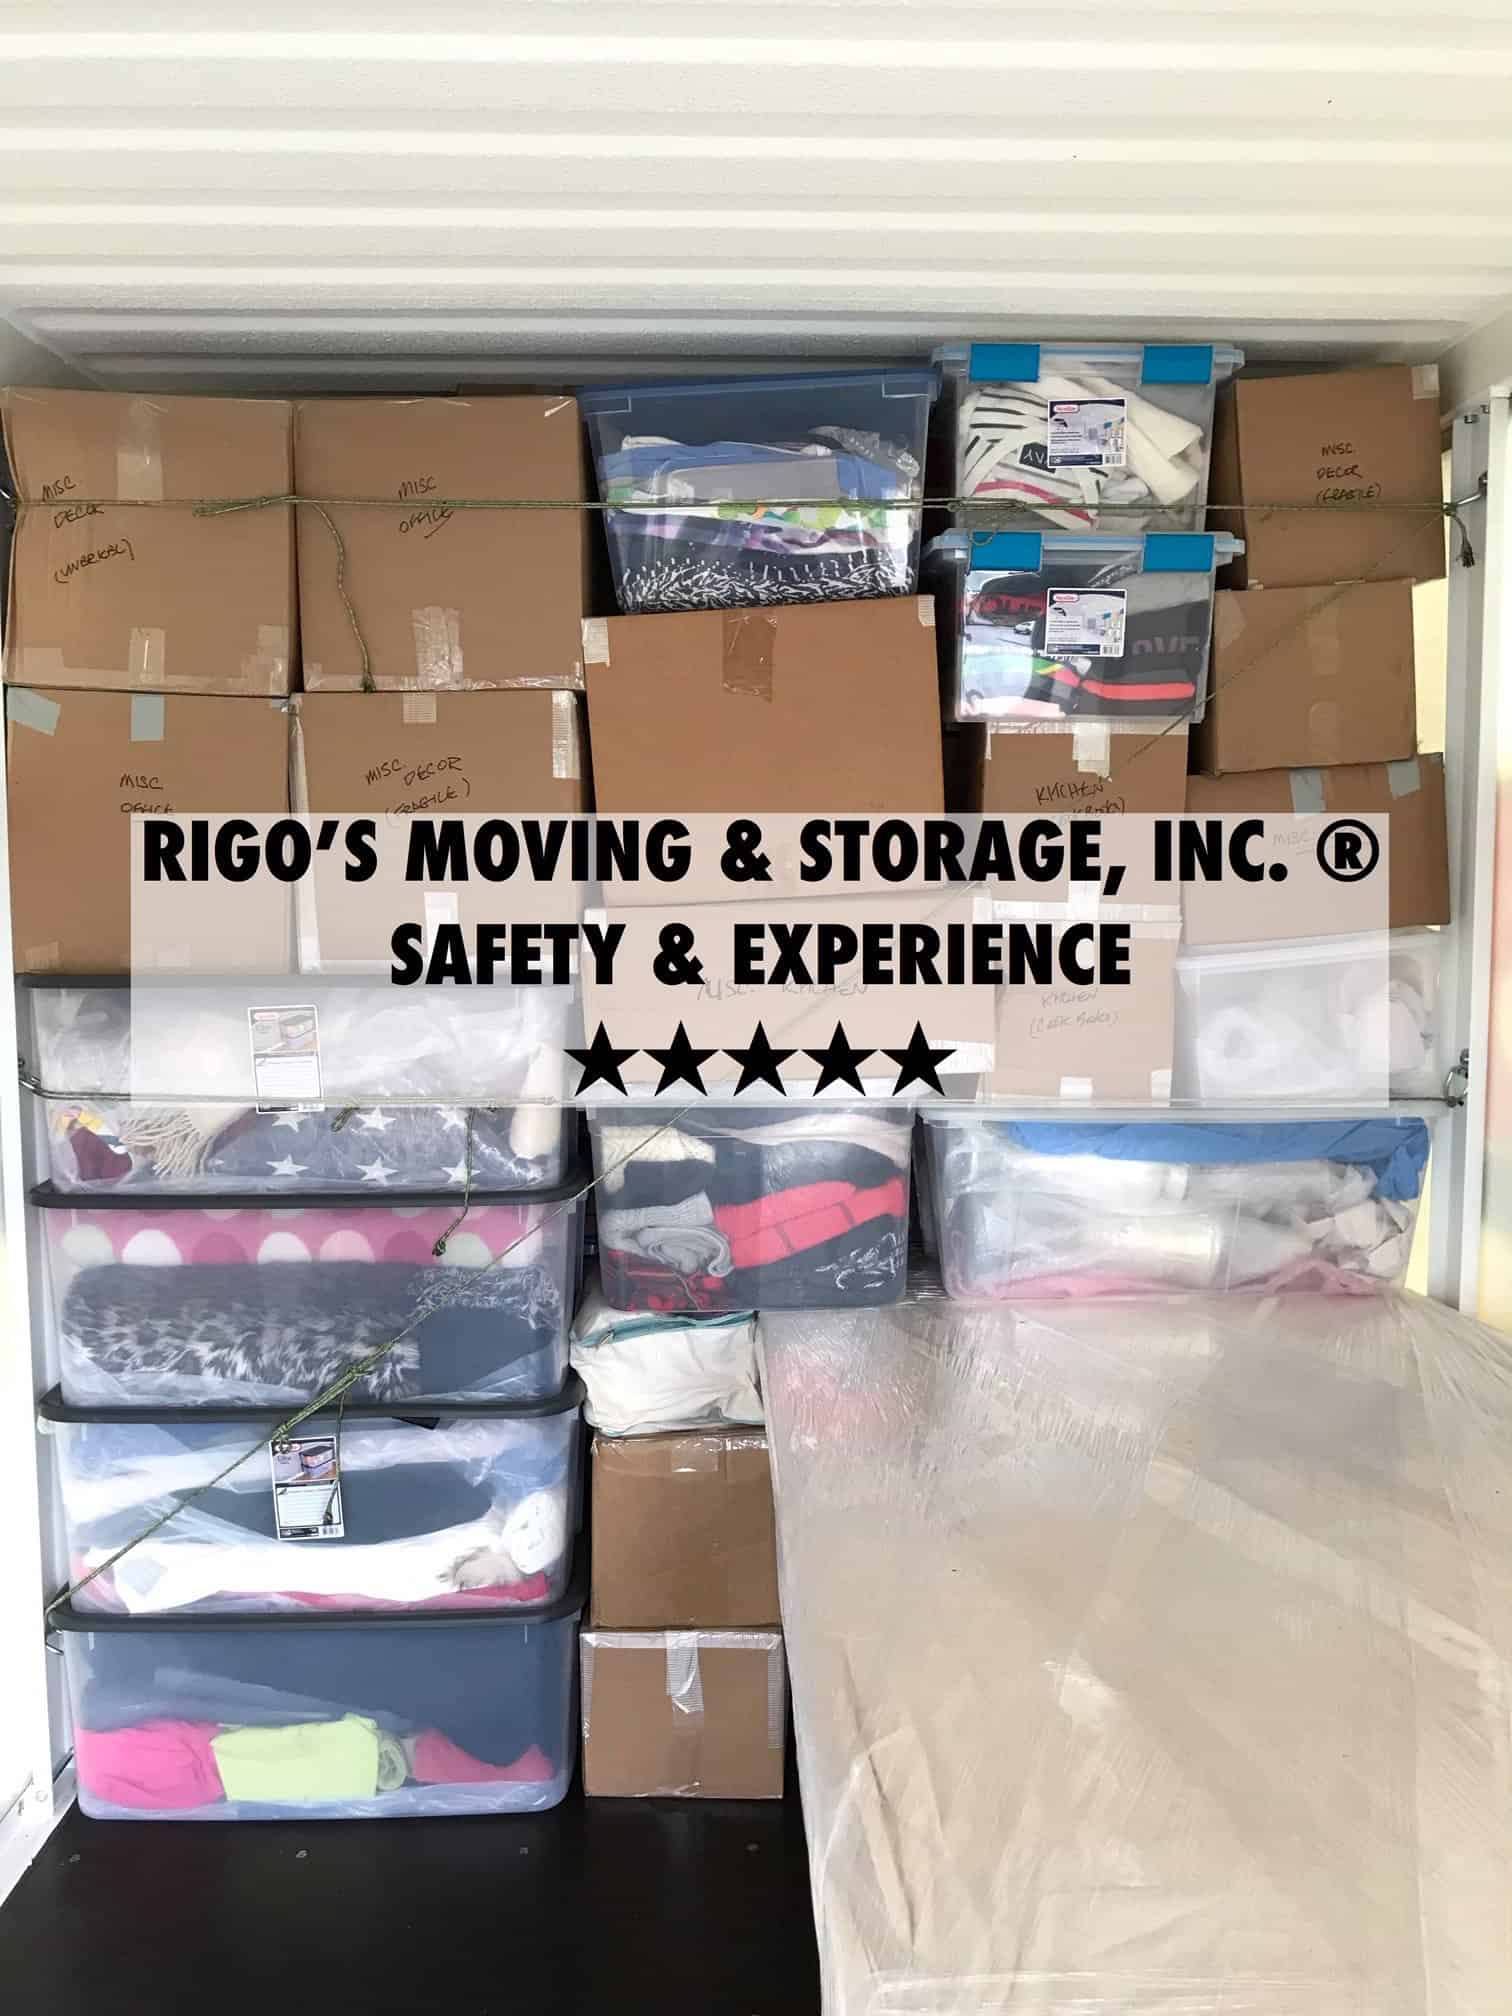 Rigo's moving